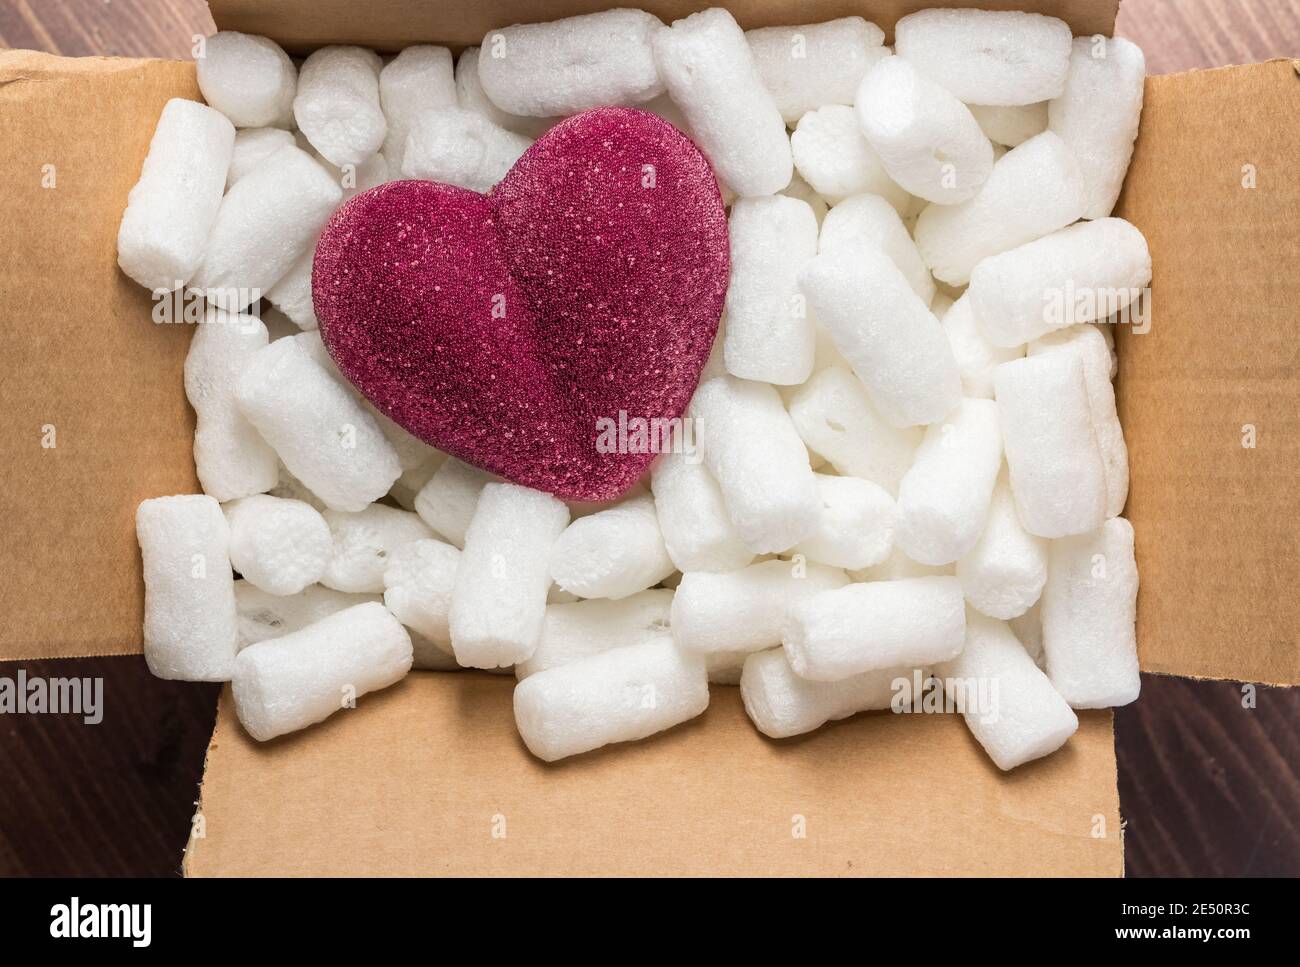 cœur rouge dans une boîte en carton avec garniture en mousse de polystyrène pour le concept de coeur fragile Banque D'Images